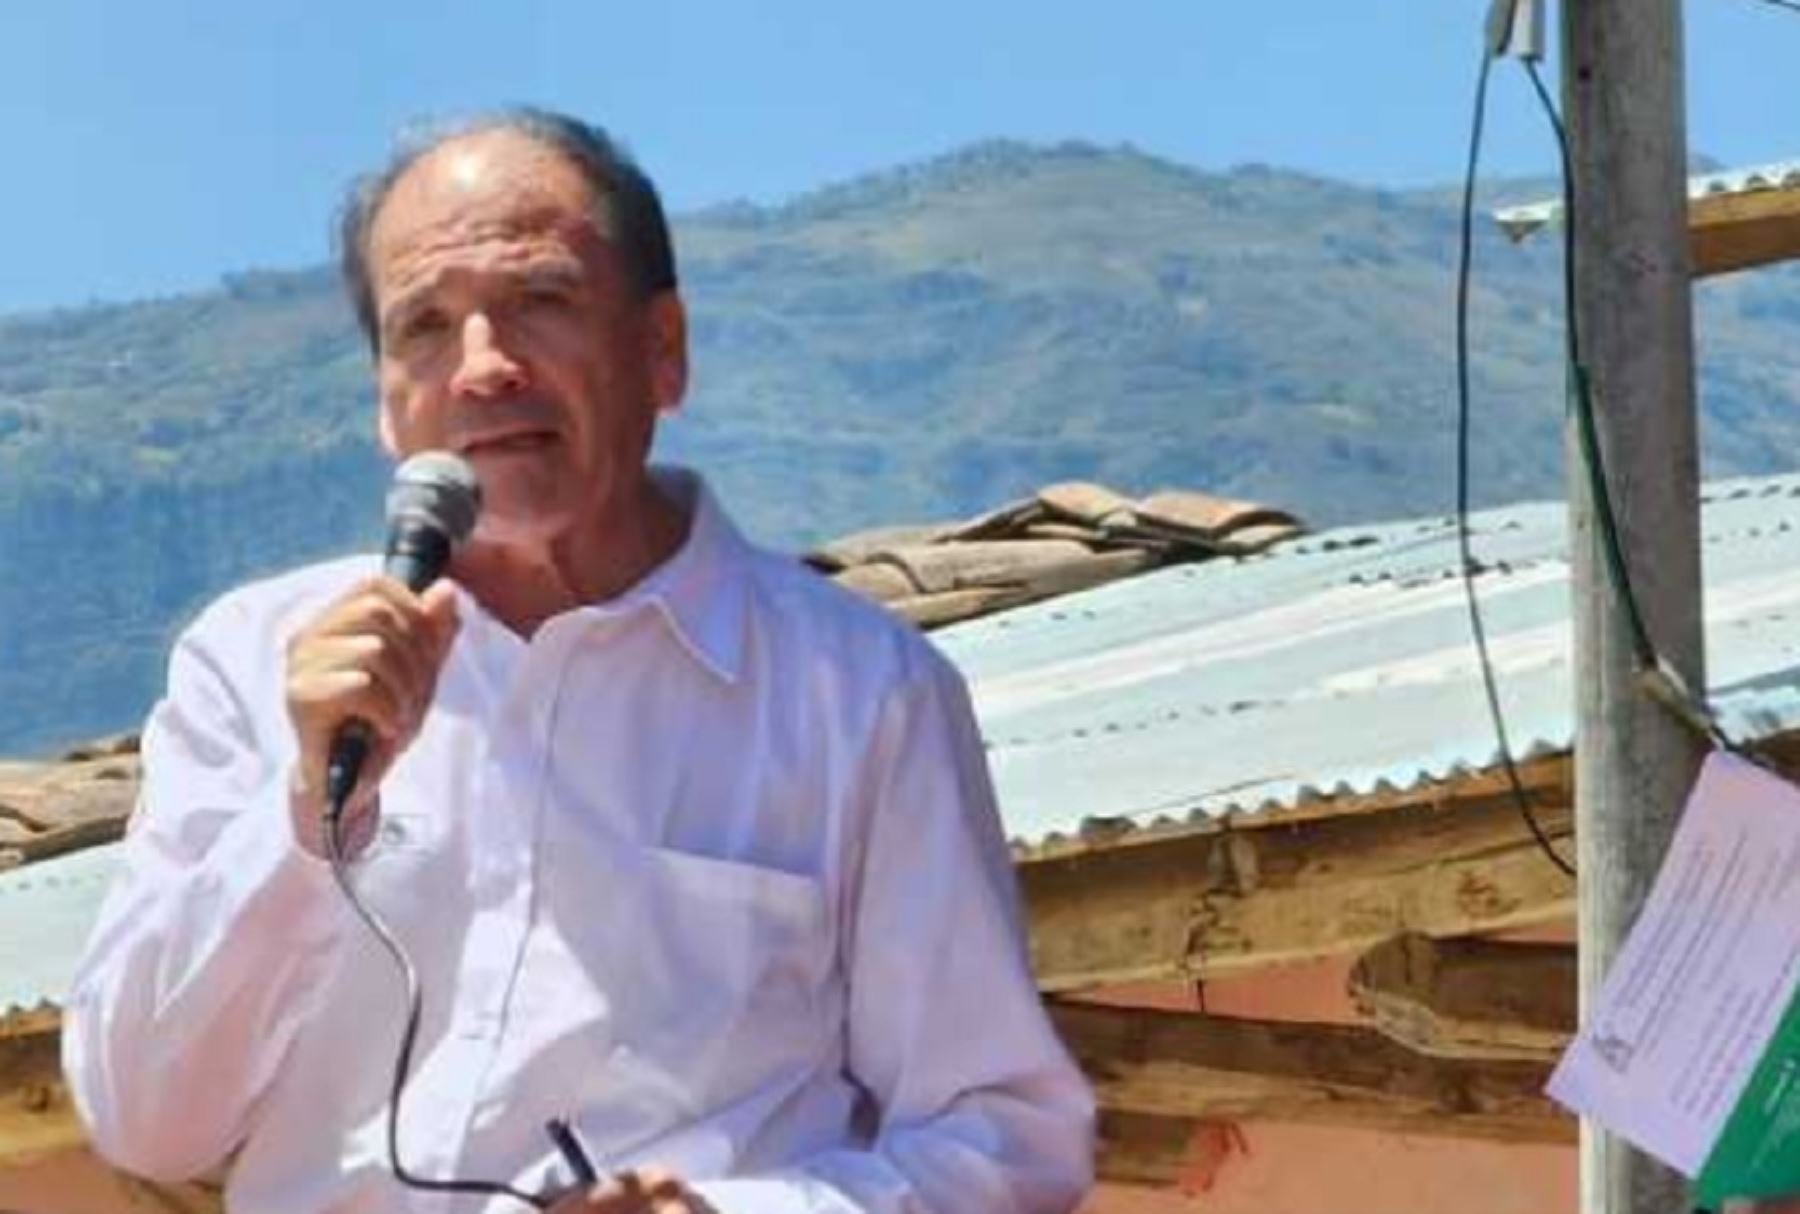 El ministro del Ambiente, Wilbeet Rozas, resaltó hoy la lucha histórica de Huangamarca, pueblo ubicado en el distrito de Bambamarca, provincia cajamarquina de Hualgayoc, en defensa de la conservación del ambiente y de los recursos naturales.